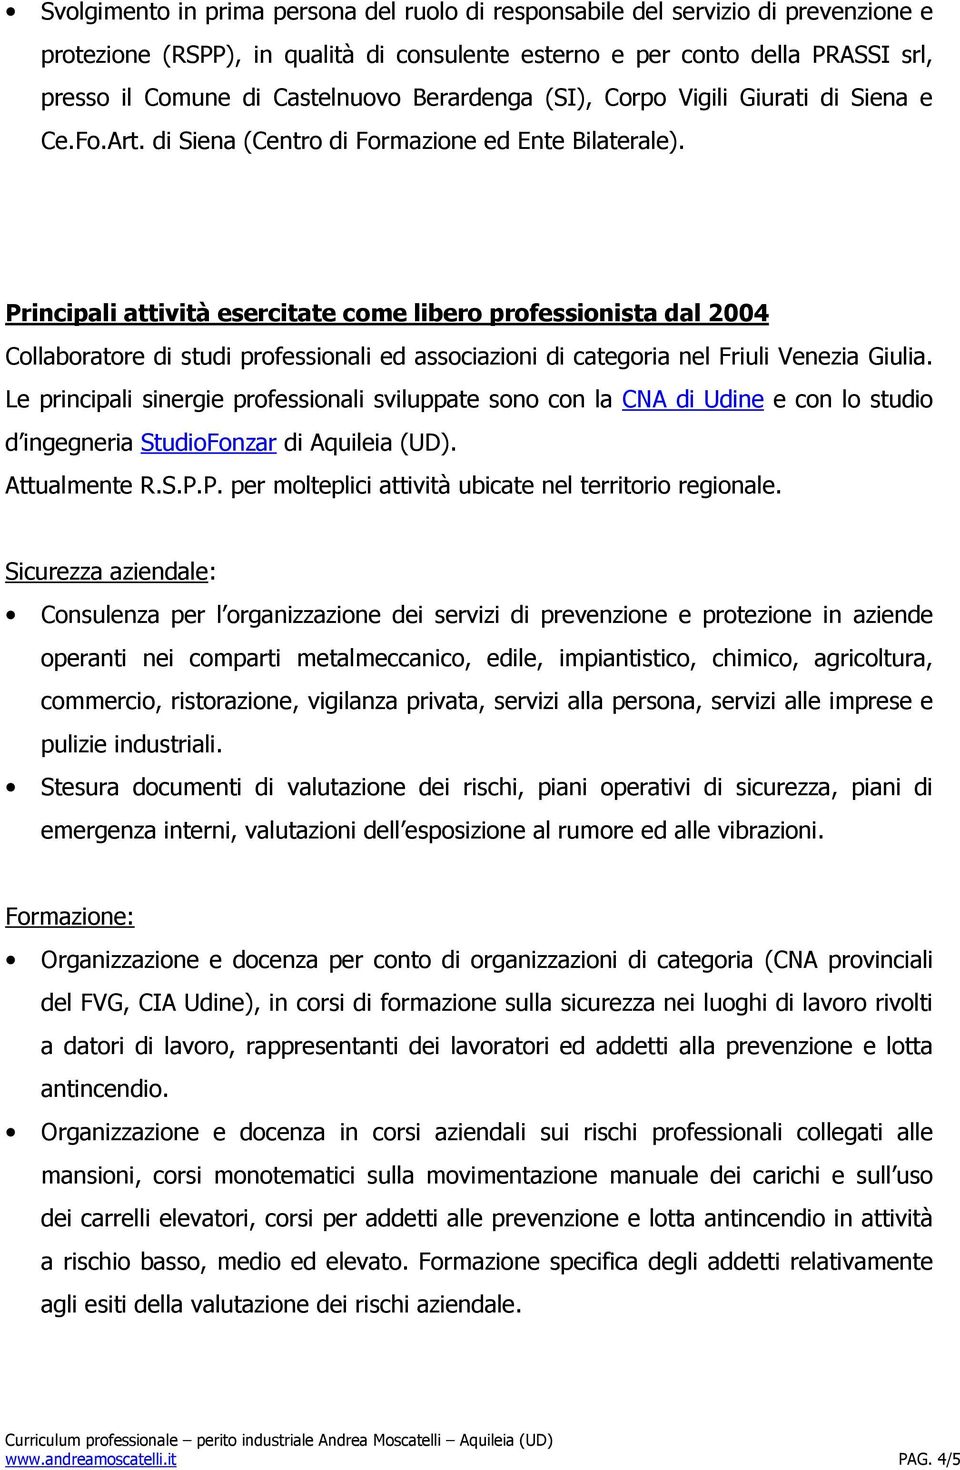 Principali attività esercitate come libero professionista dal 2004 Collaboratore di studi professionali ed associazioni di categoria nel Friuli Venezia Giulia.